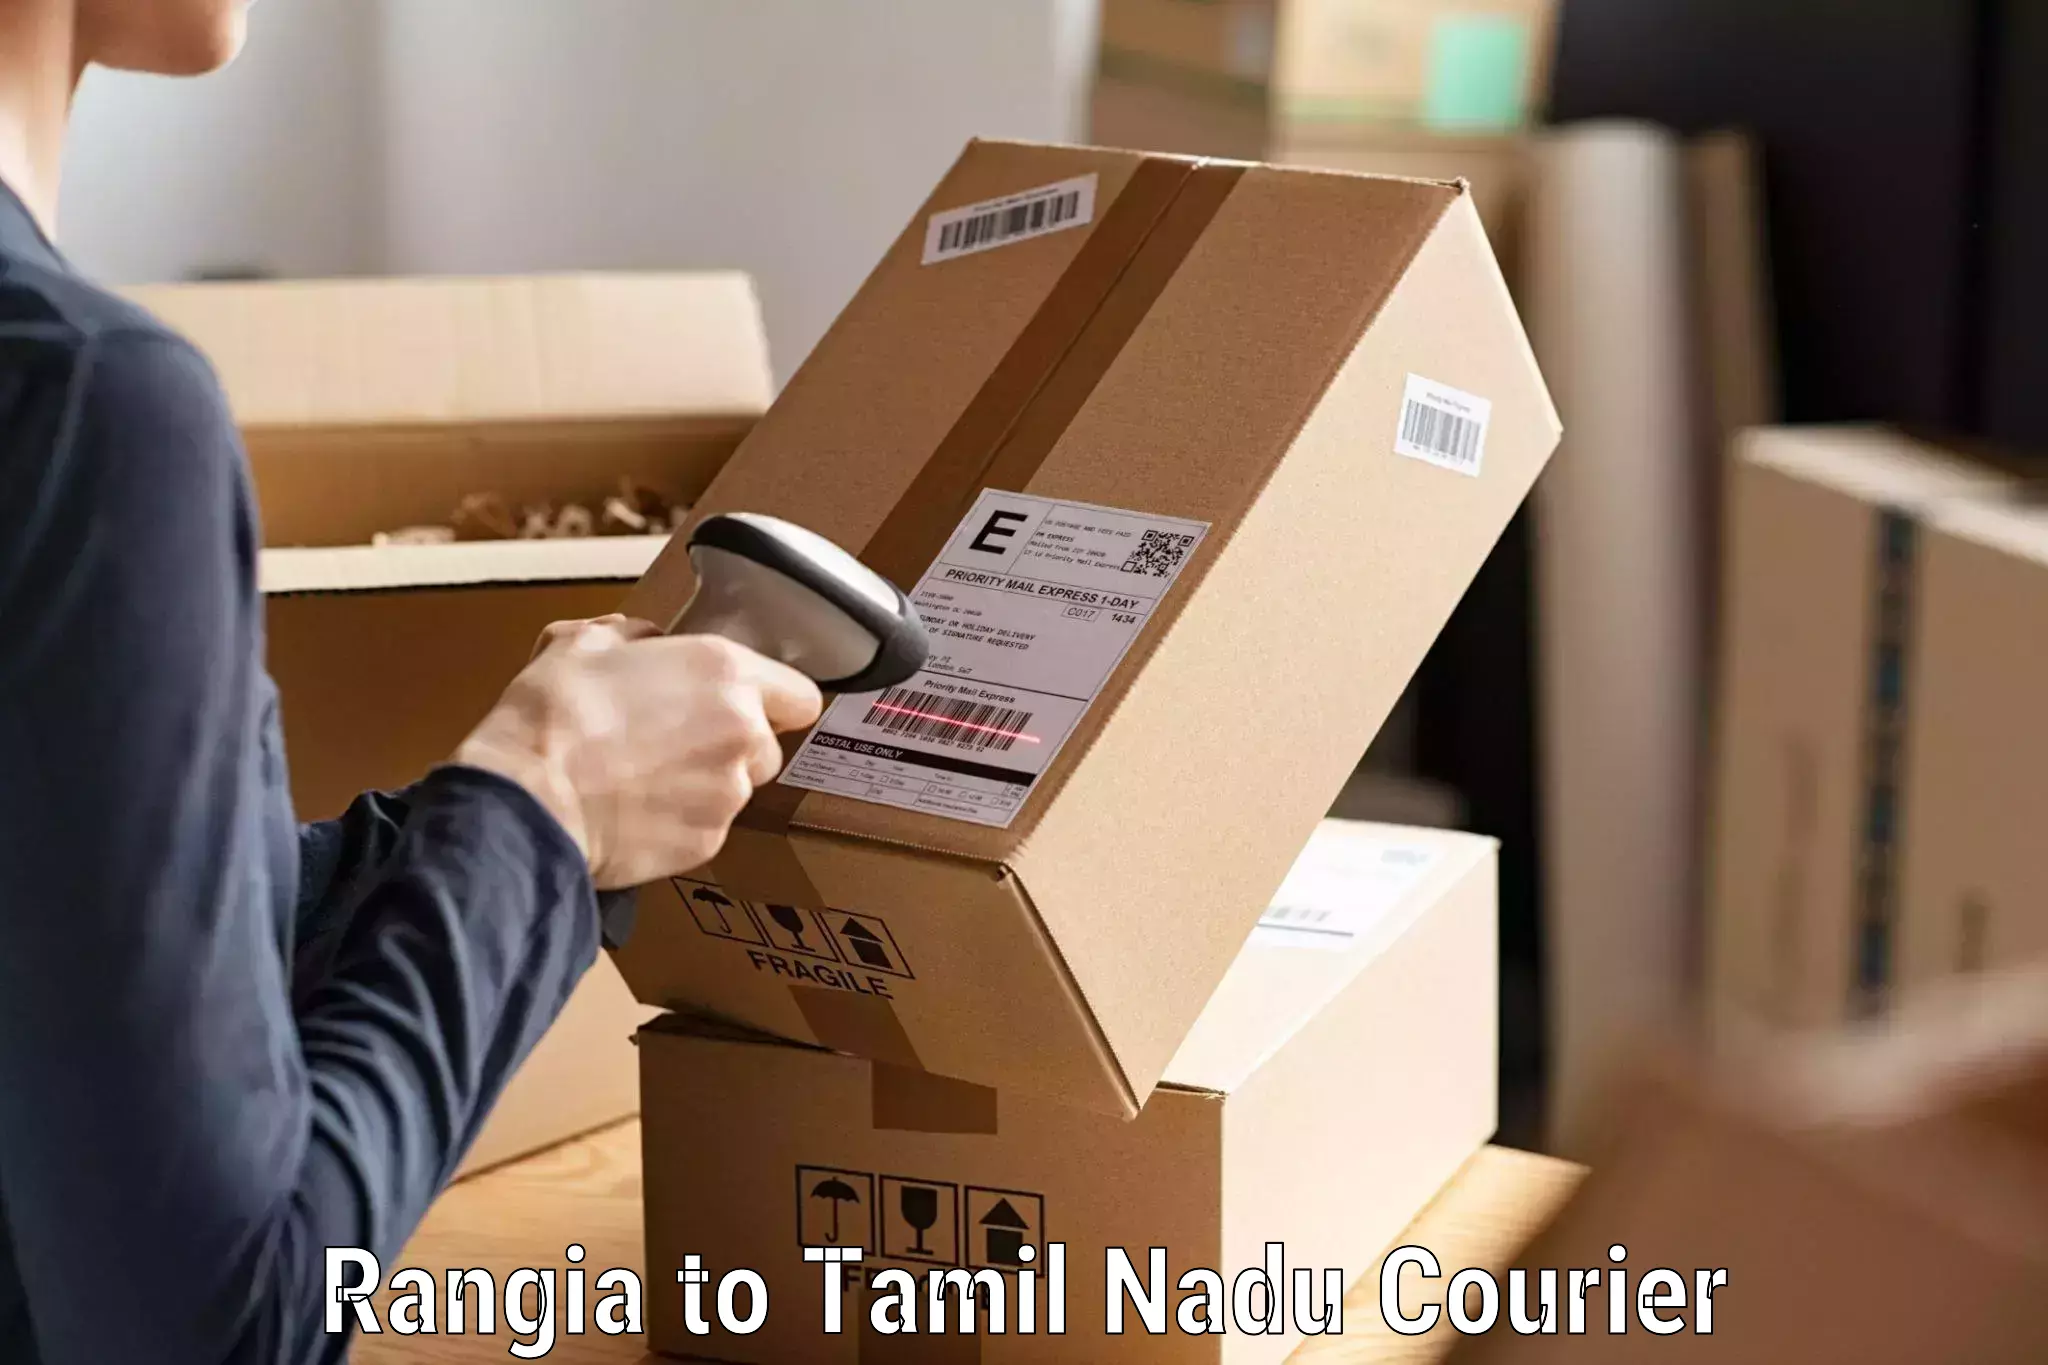 Courier service efficiency Rangia to Thiruvadanai